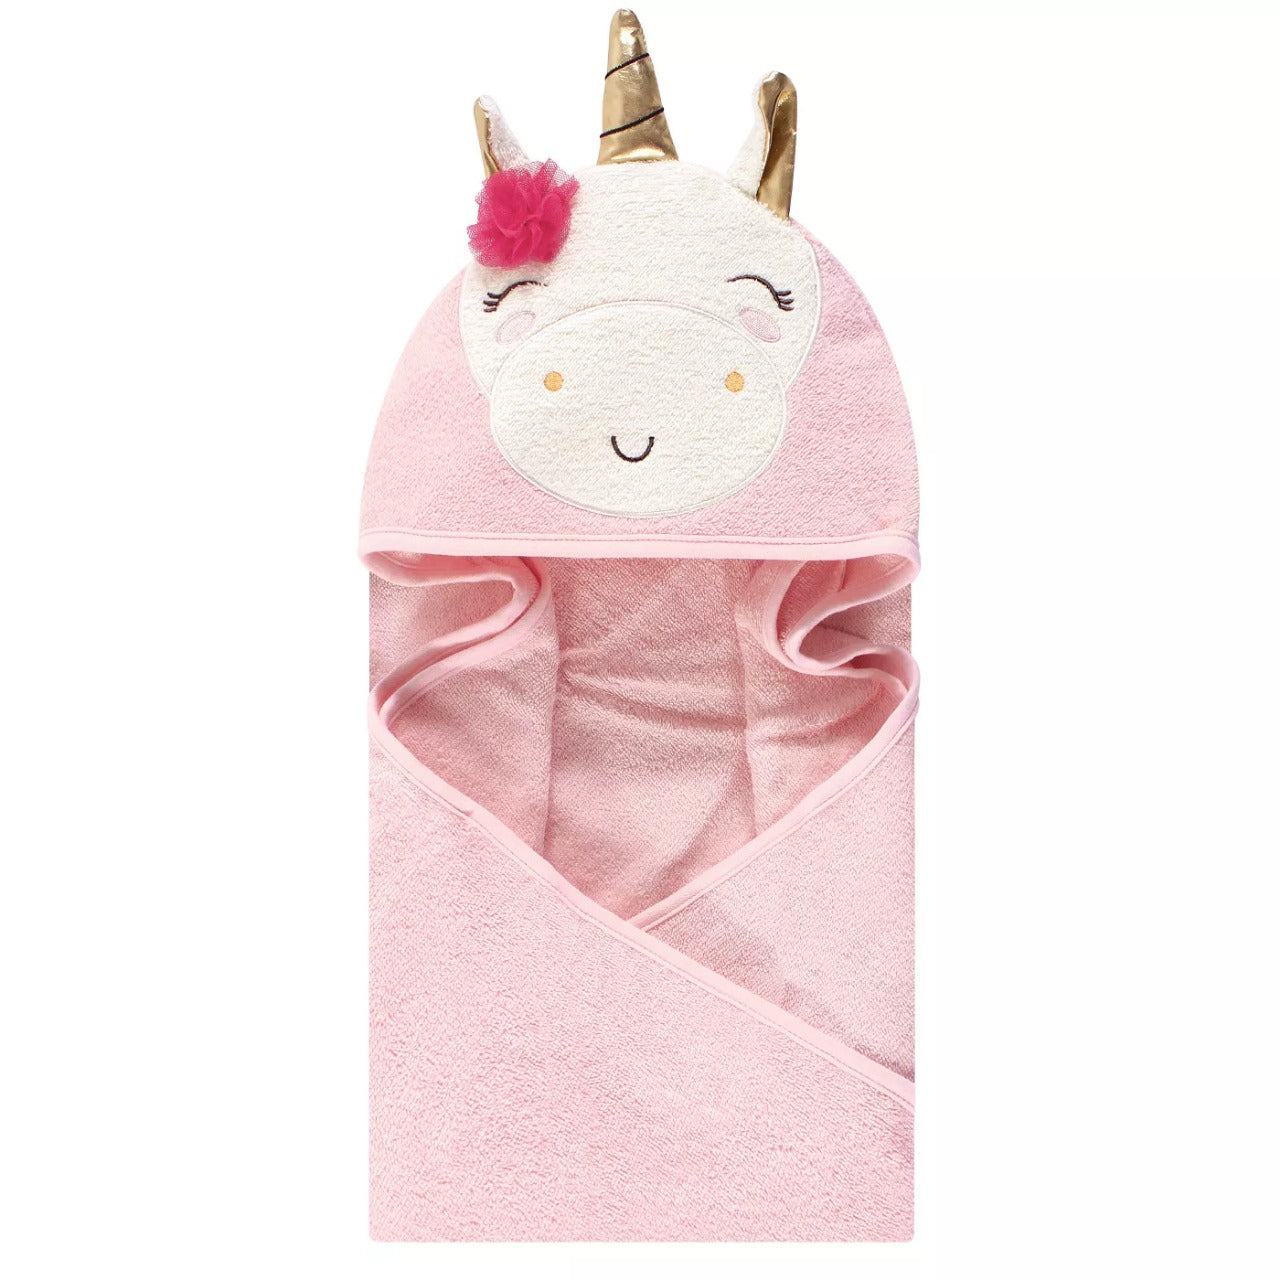 bunny themed hooded bath towel